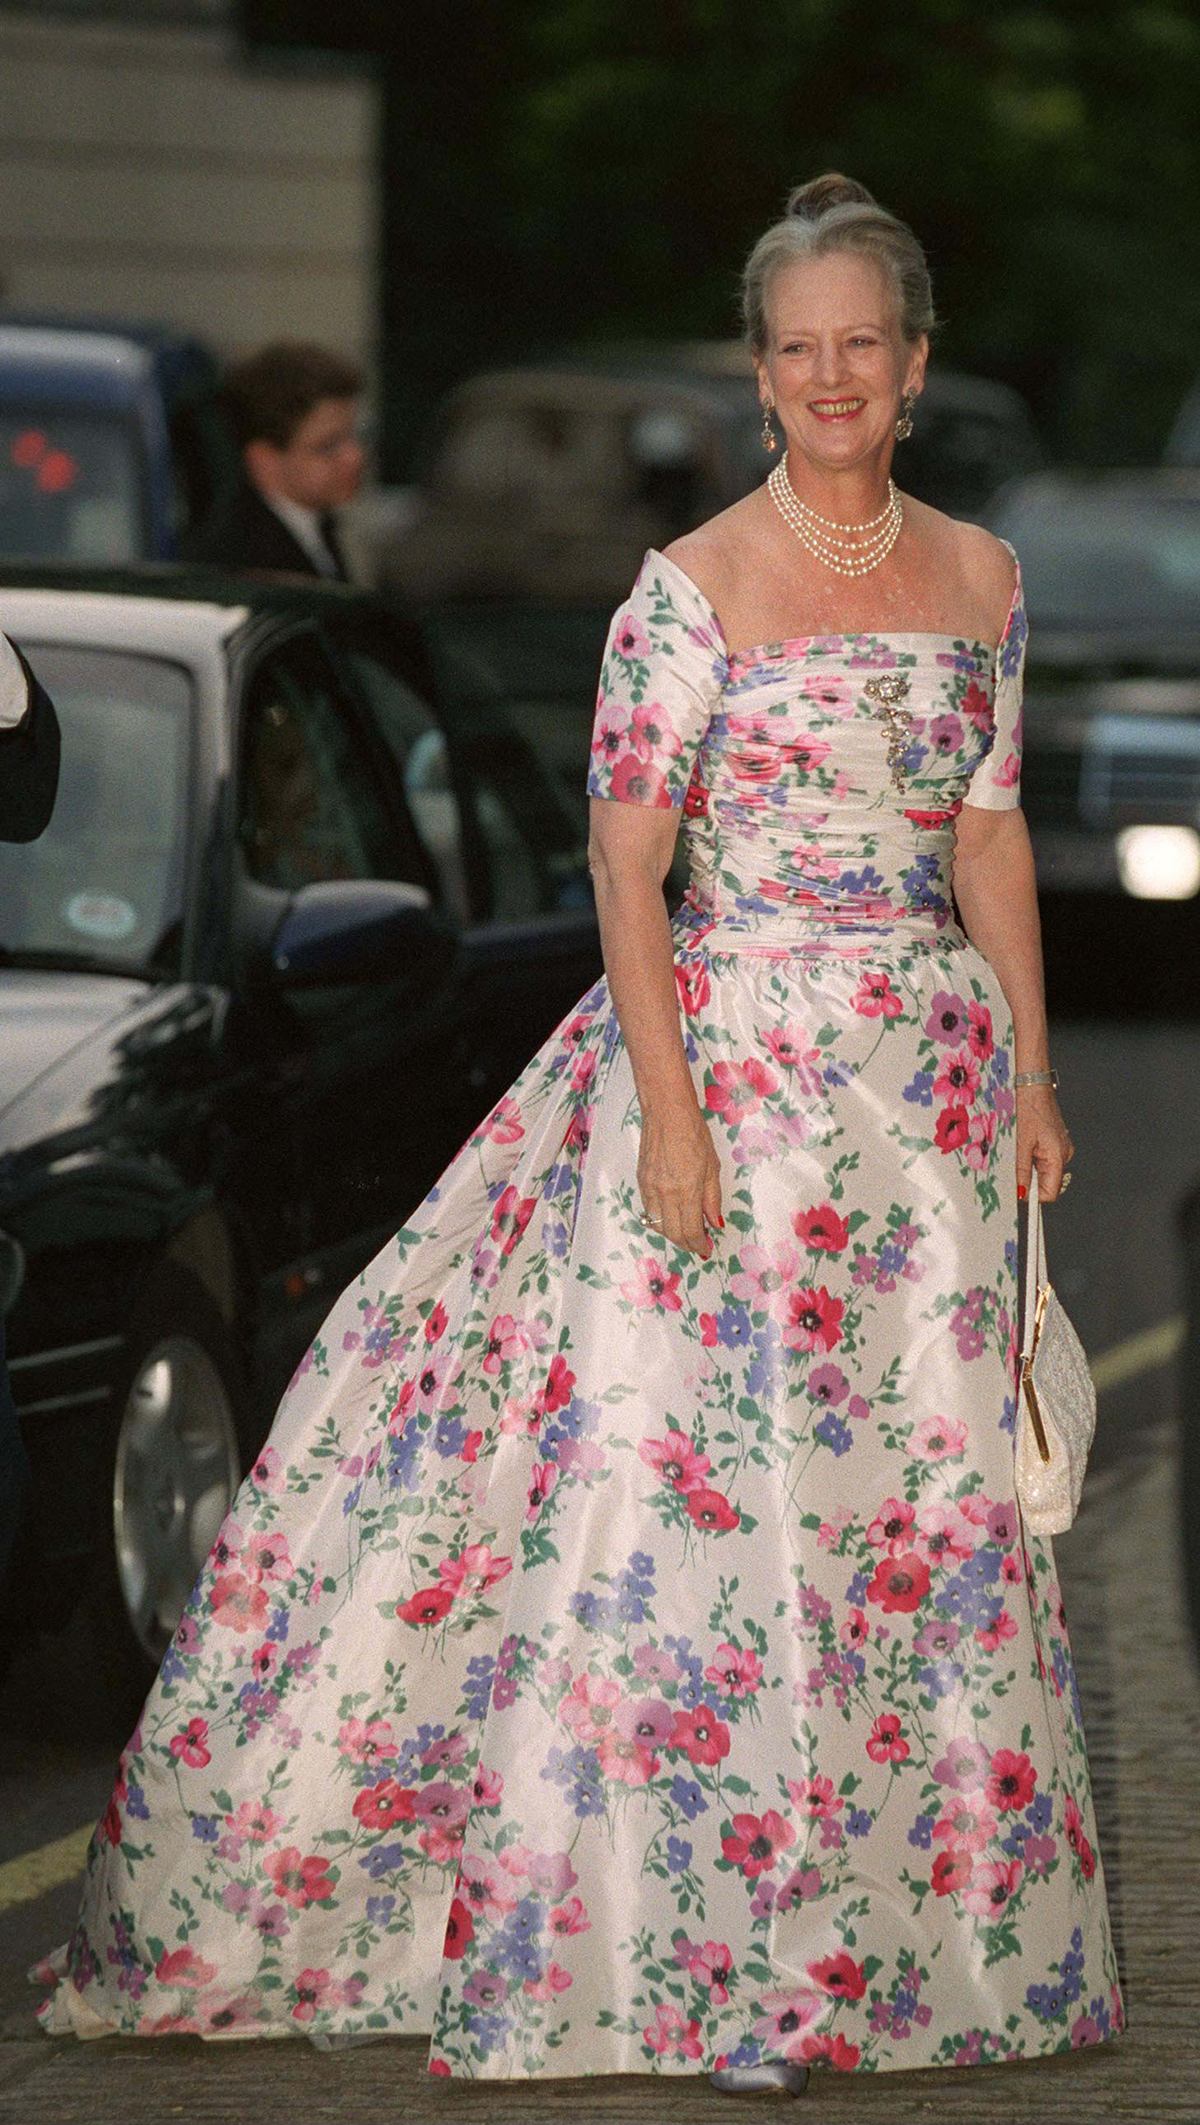 Her dronning Margrethes eneste regel, når hun klæder sig på til royal galla - ALT.dk